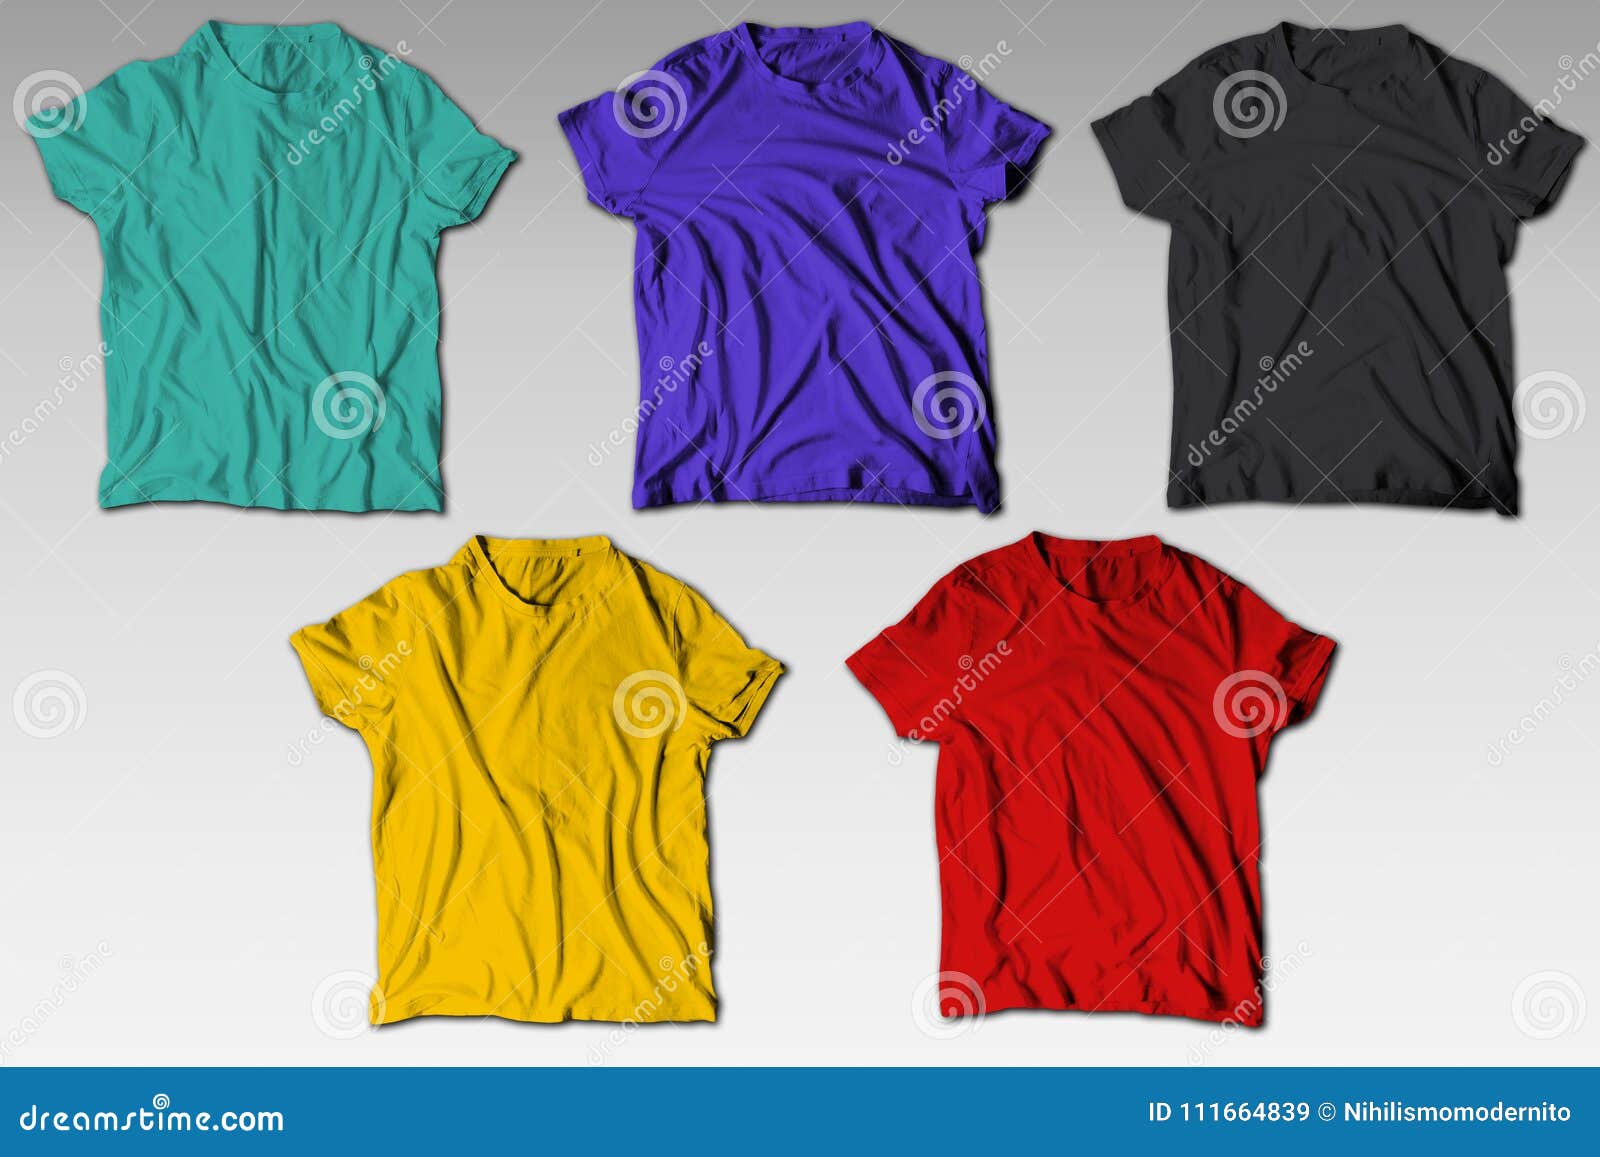 reallistic wrinkles colorful t-shirt mockup bundle